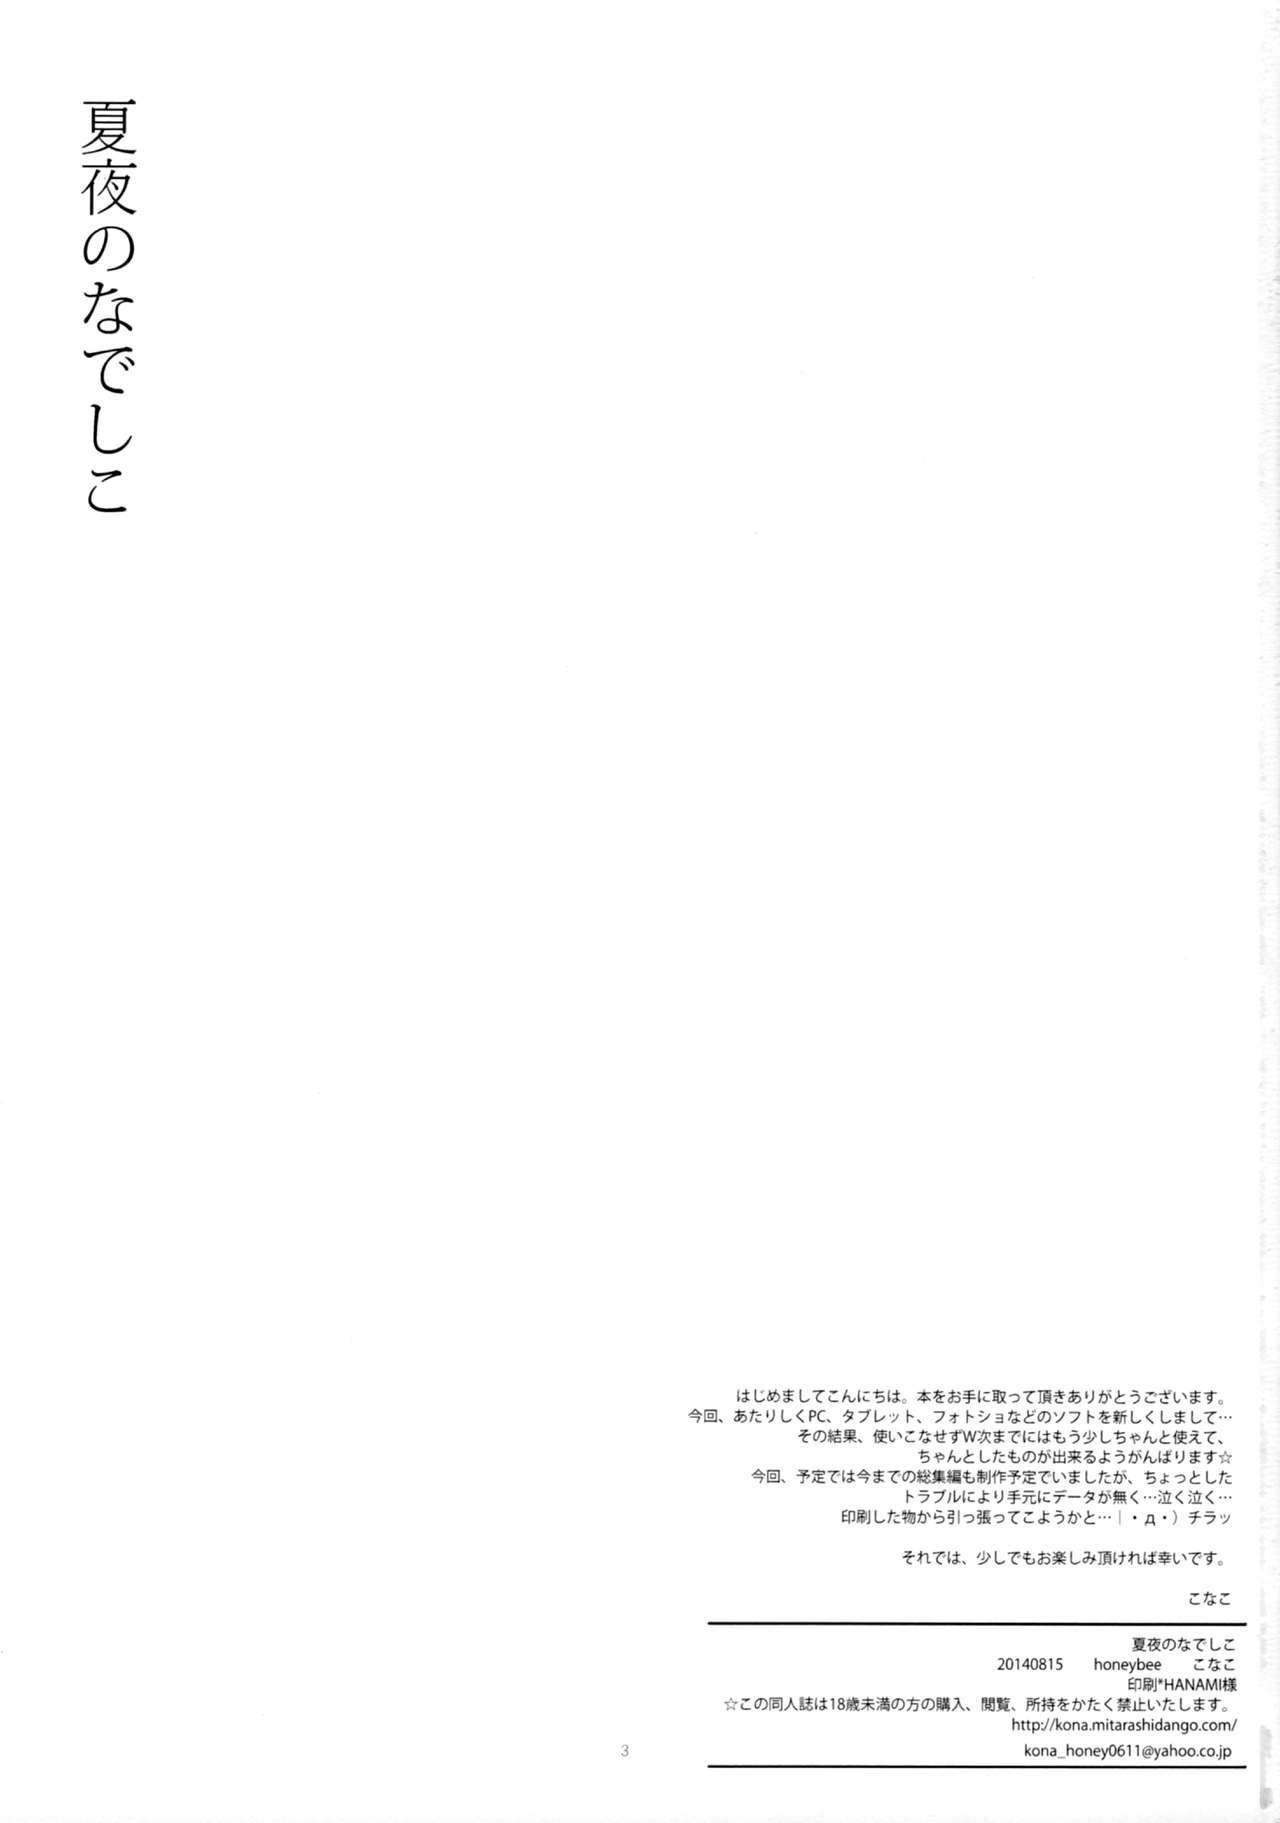 Load Natsu Yoru no Nadeshiko - Macross frontier Anus - Page 2